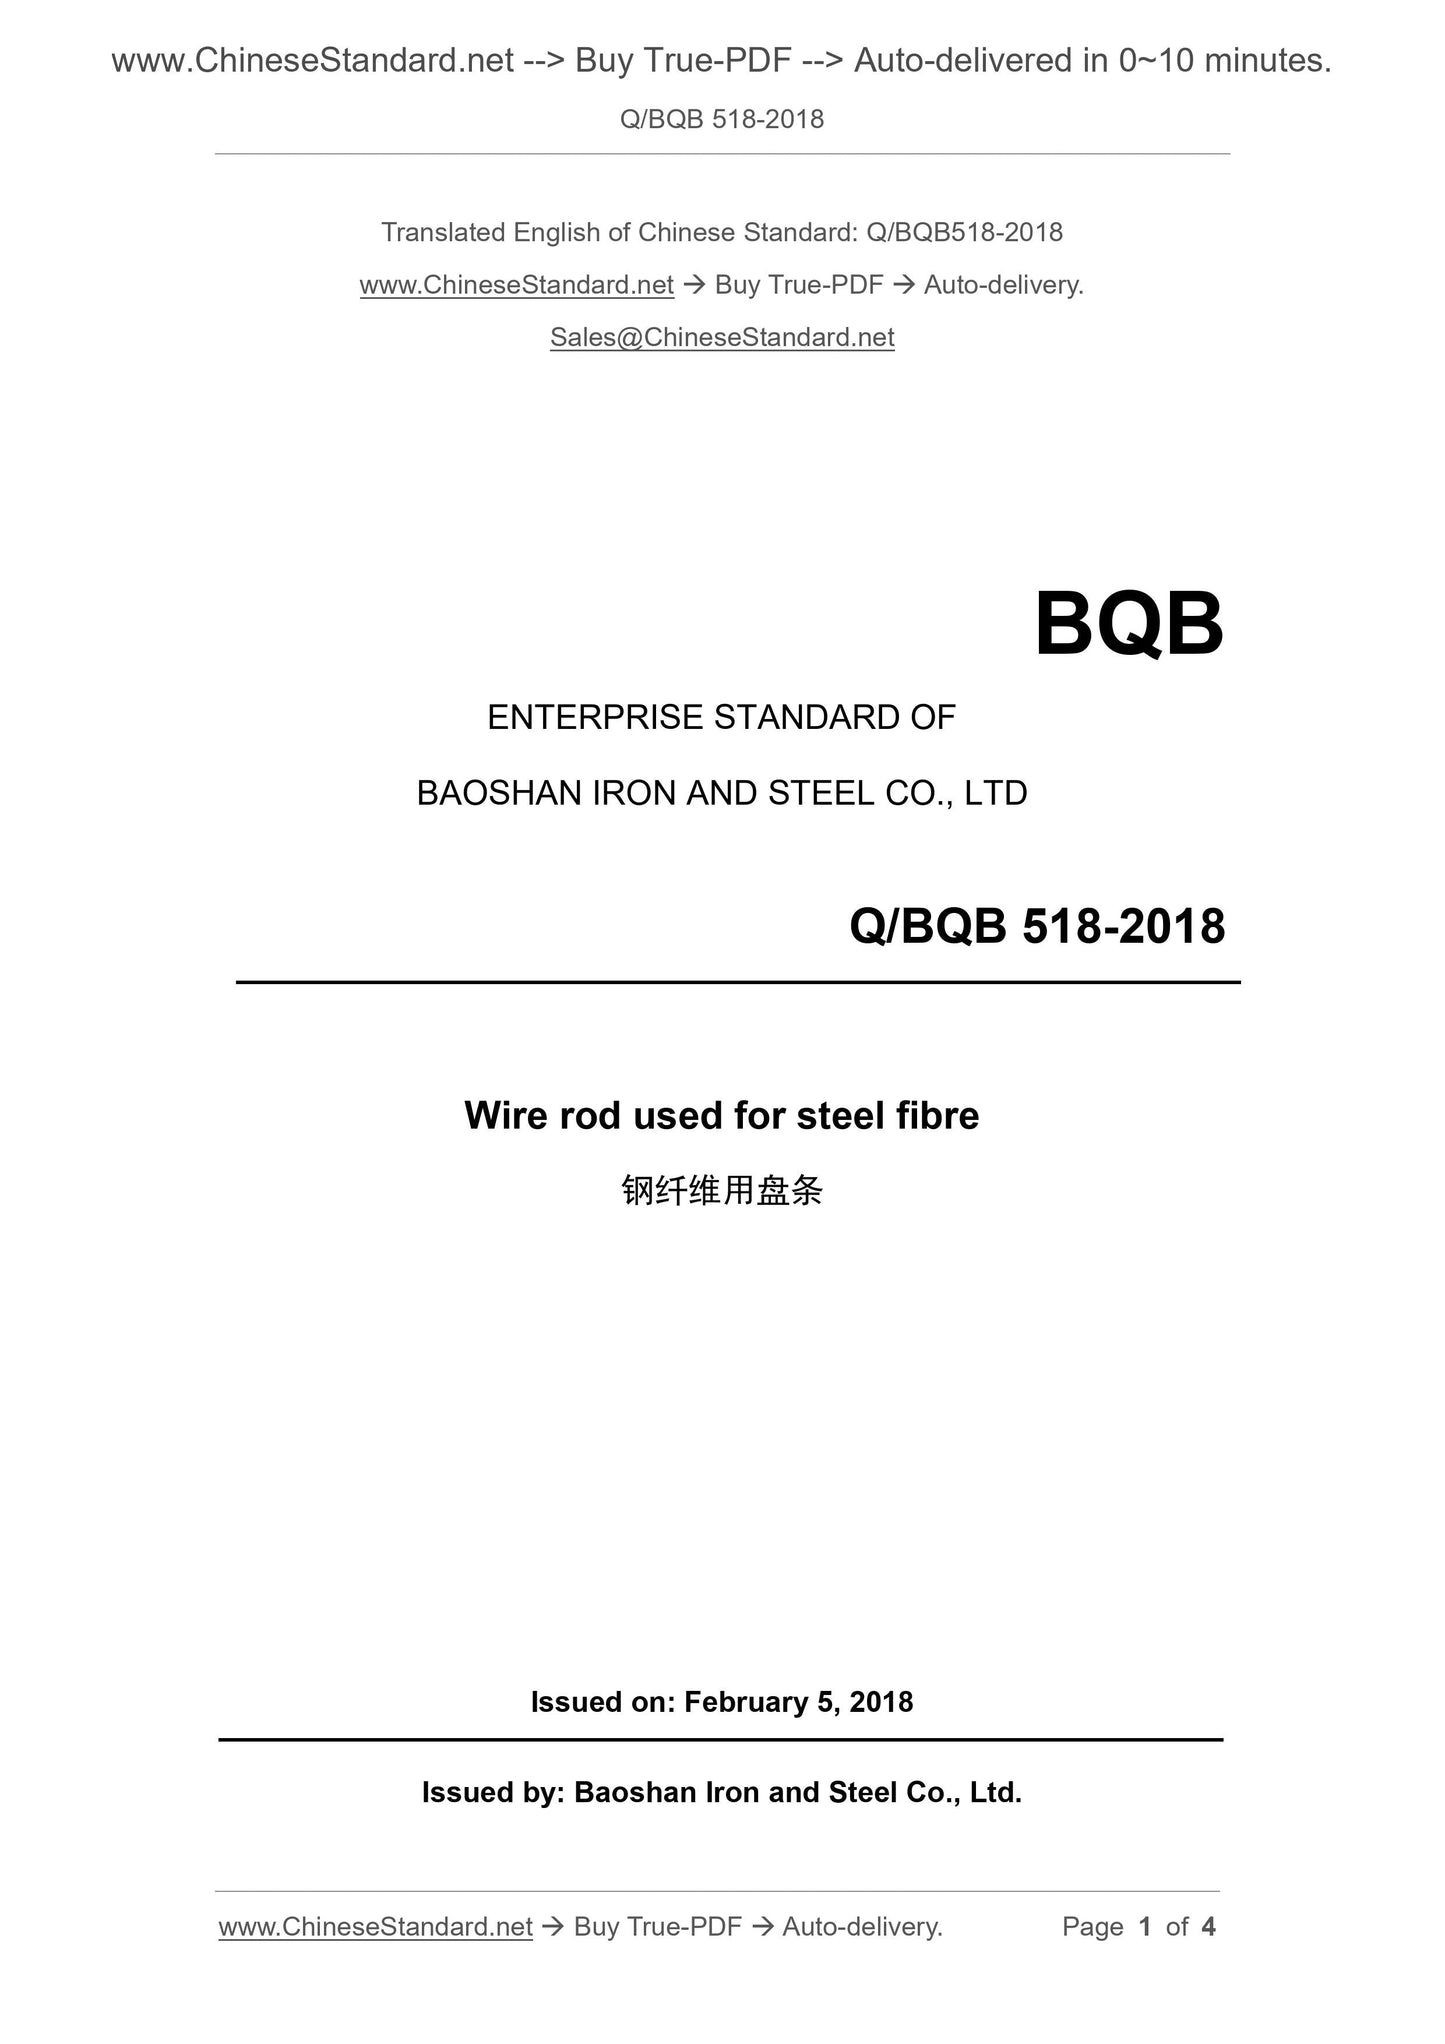 Q/BQB 518-2018 Page 1